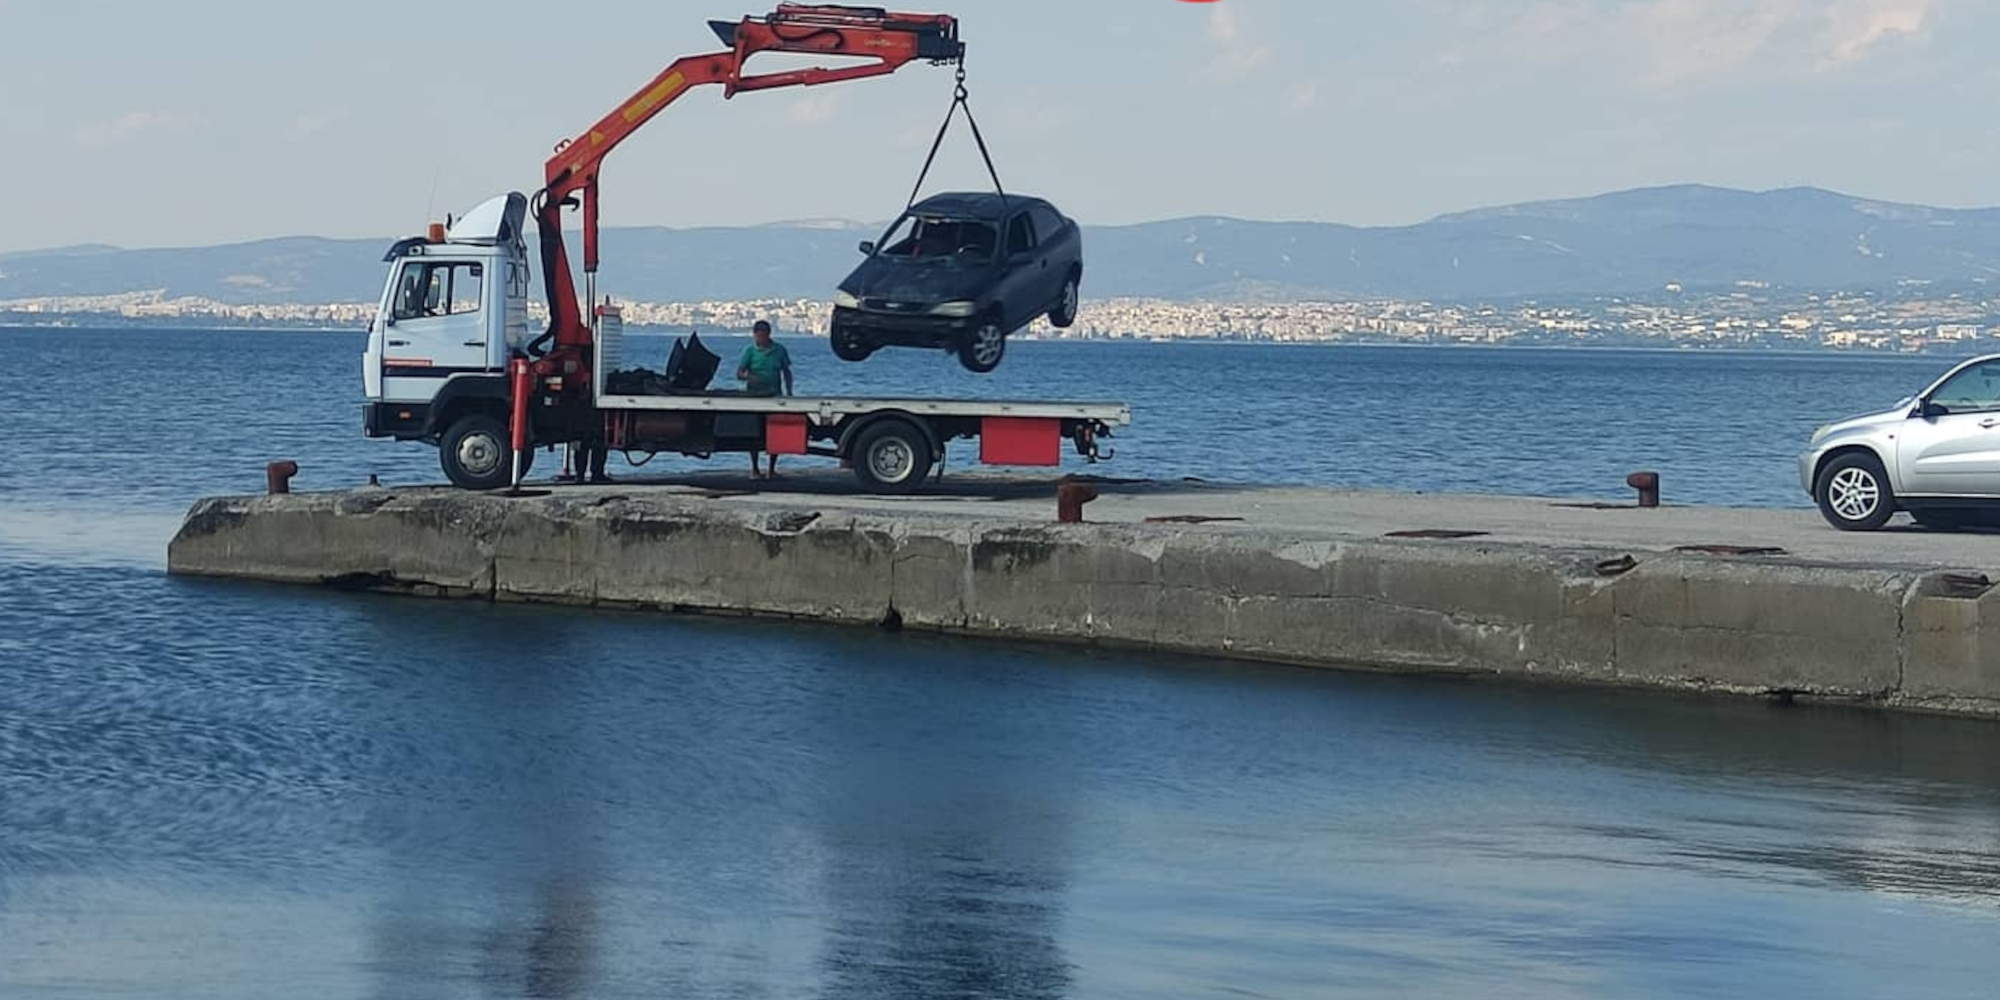 Το αυτοκίνητο που βρέθηκε στη θάλασσα στη Θεσσαλονίκη